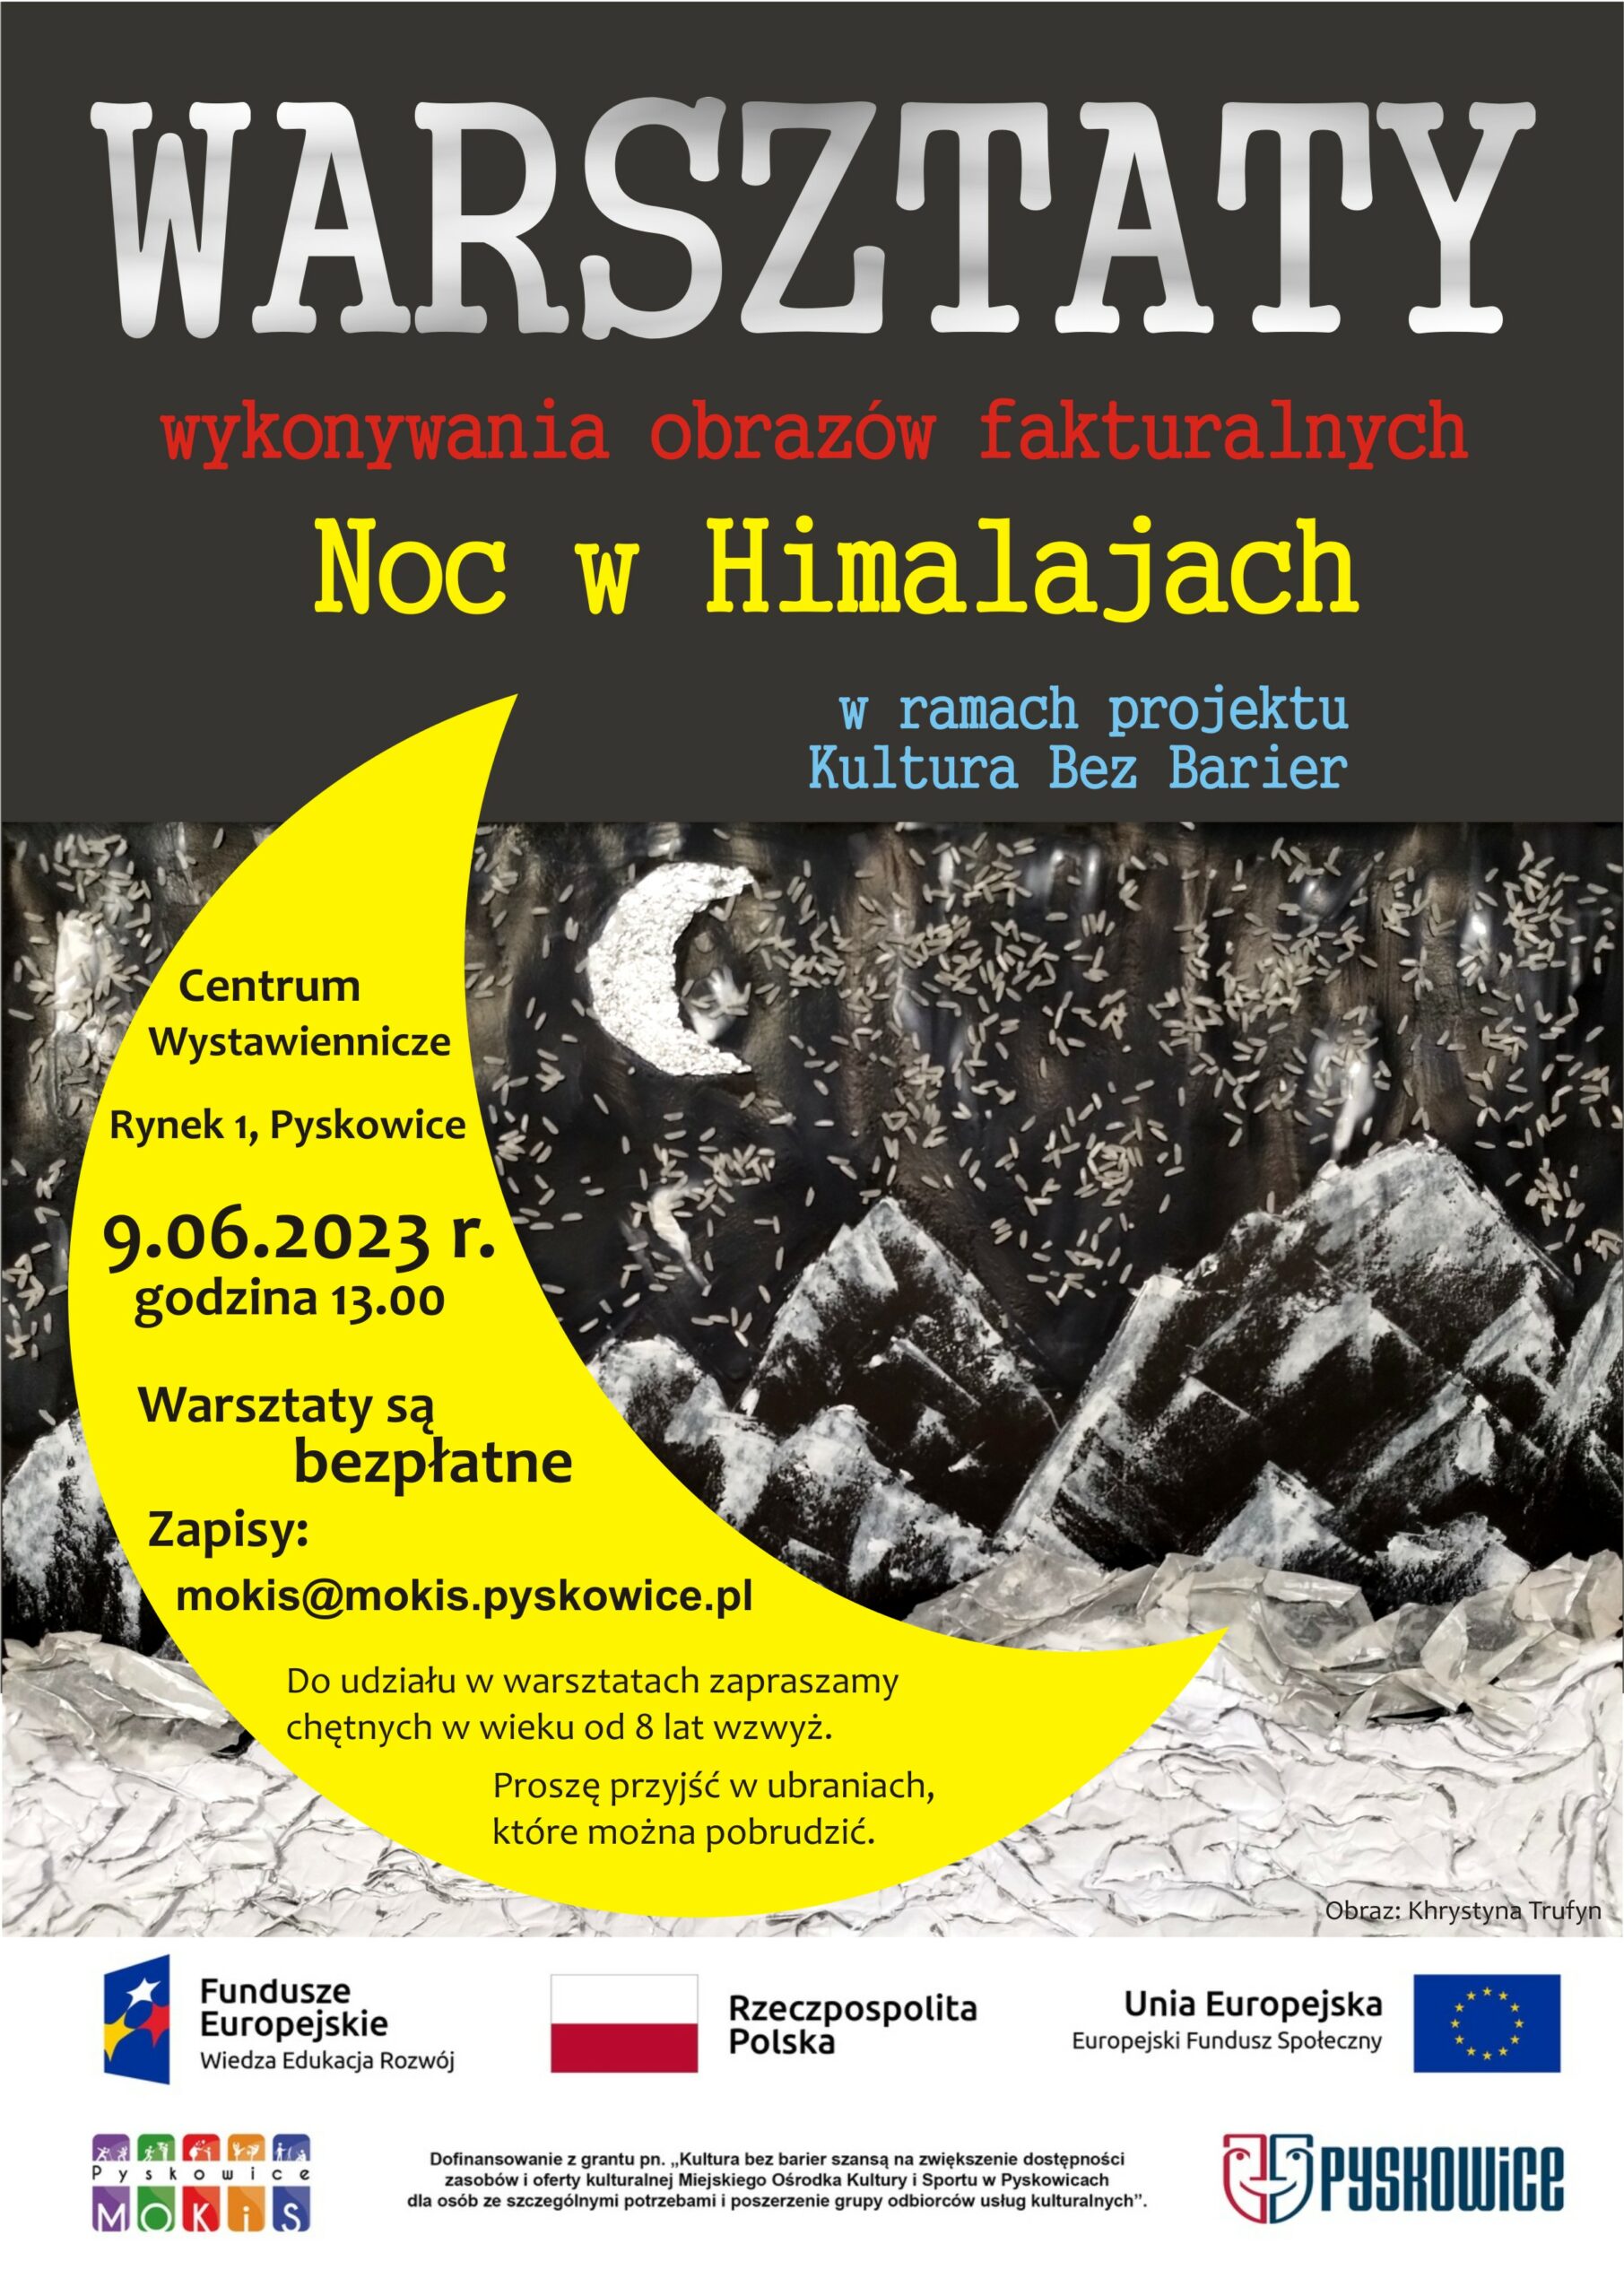 Plakat promujący warsztaty wykonywania obrazów fakturalnych Noc w Himalajach w ramach projektu Kultura Bez Barier